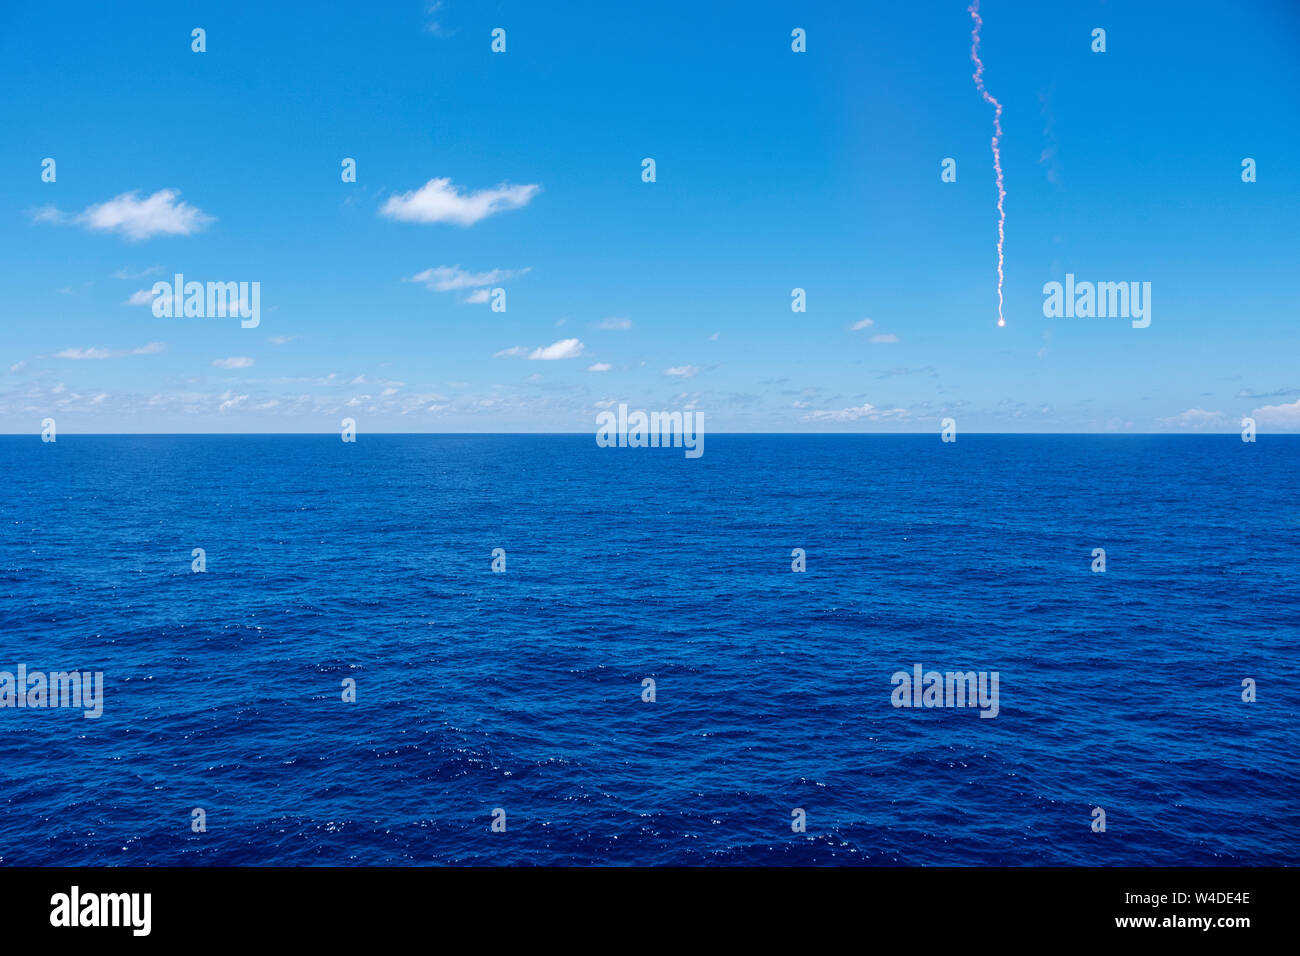 Vasto océano azul con una señal de socorro sobre el horizonte Foto de stock